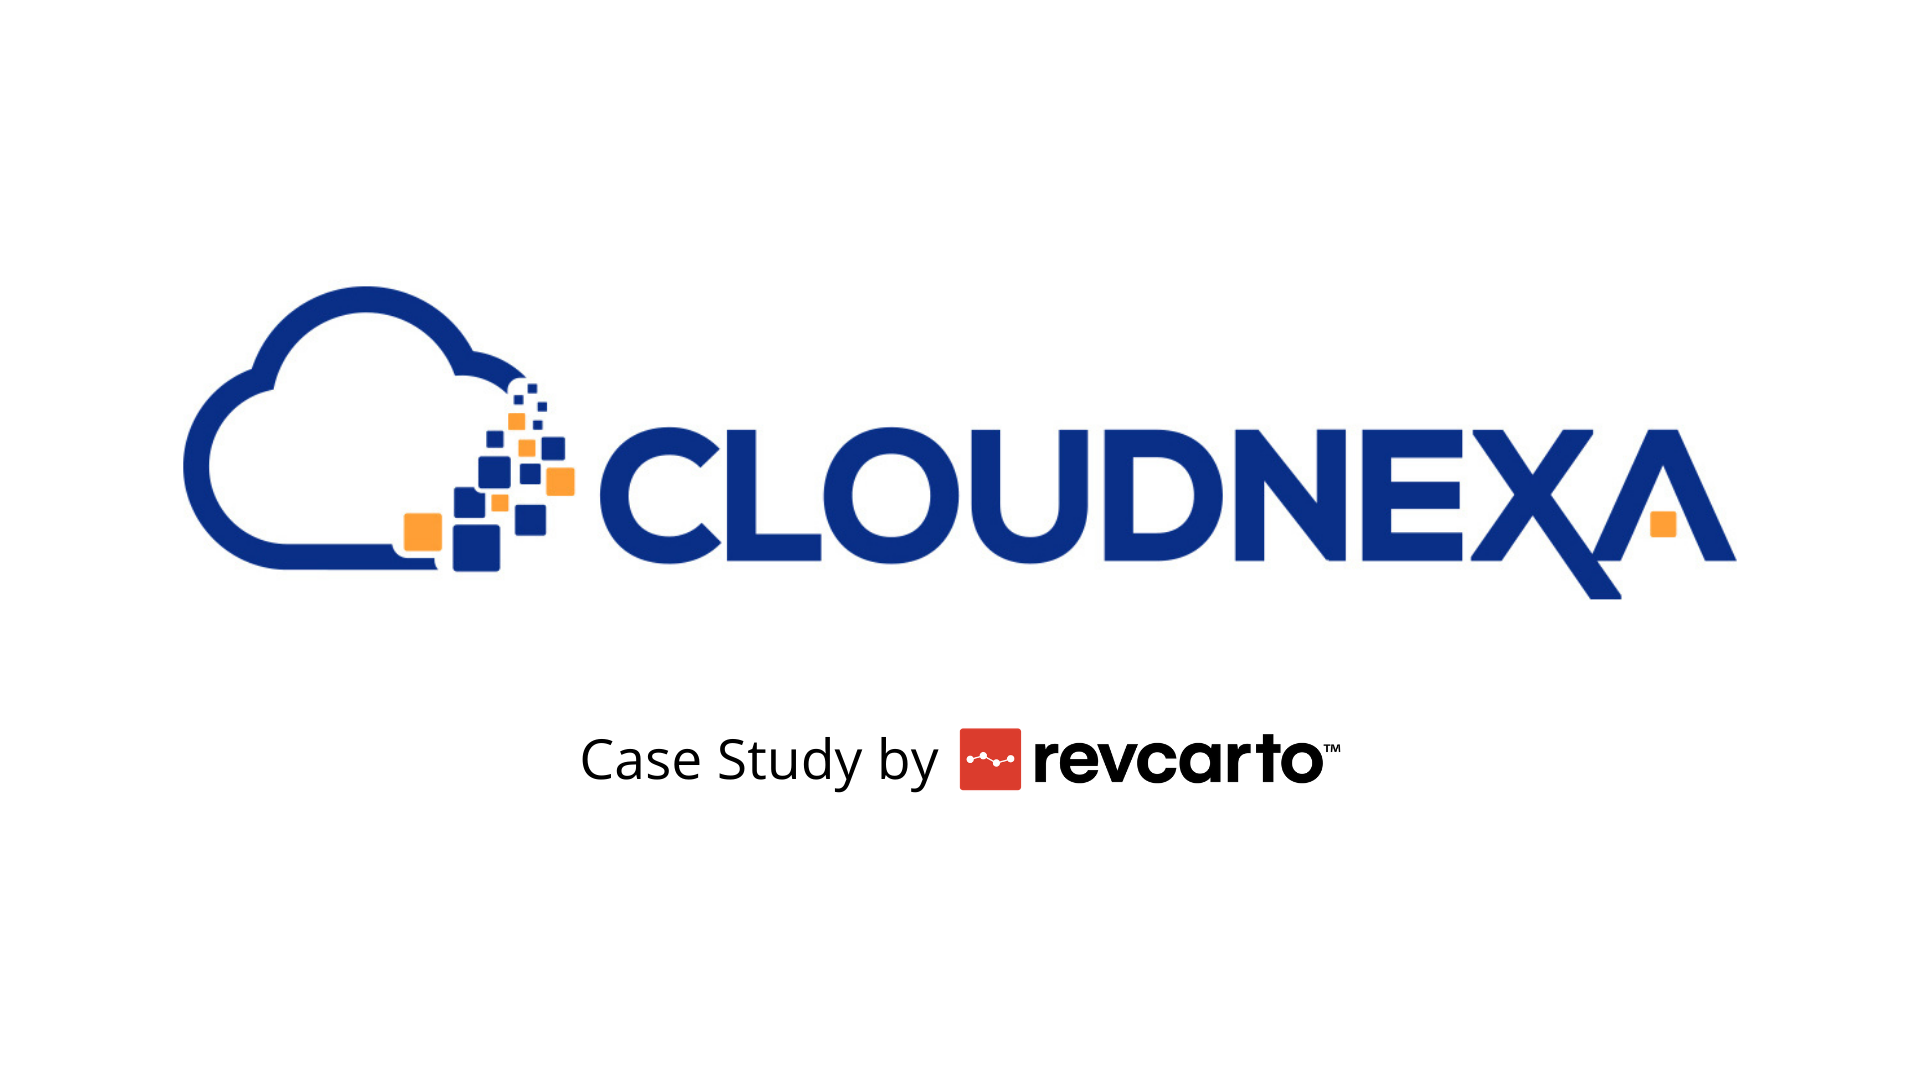 Cloudnexa Case Study